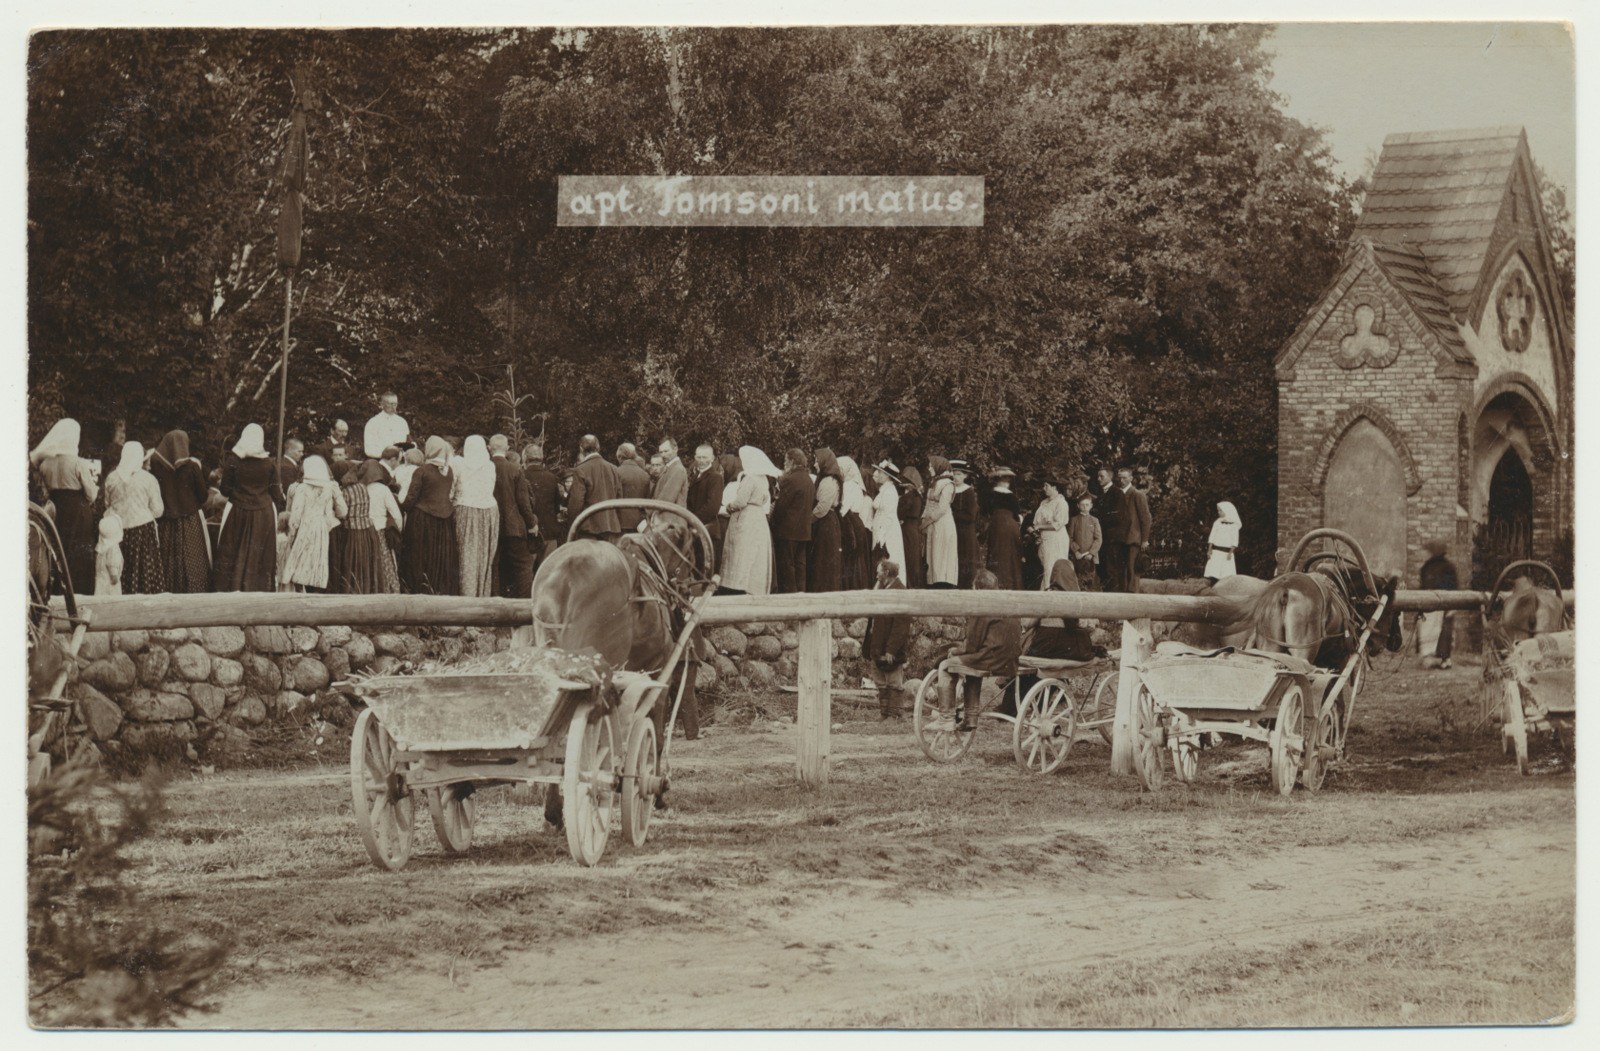 foto, Viljandimaa, Paistu, apteeker Tomsoni matuselised, 1914, foto H. Silk